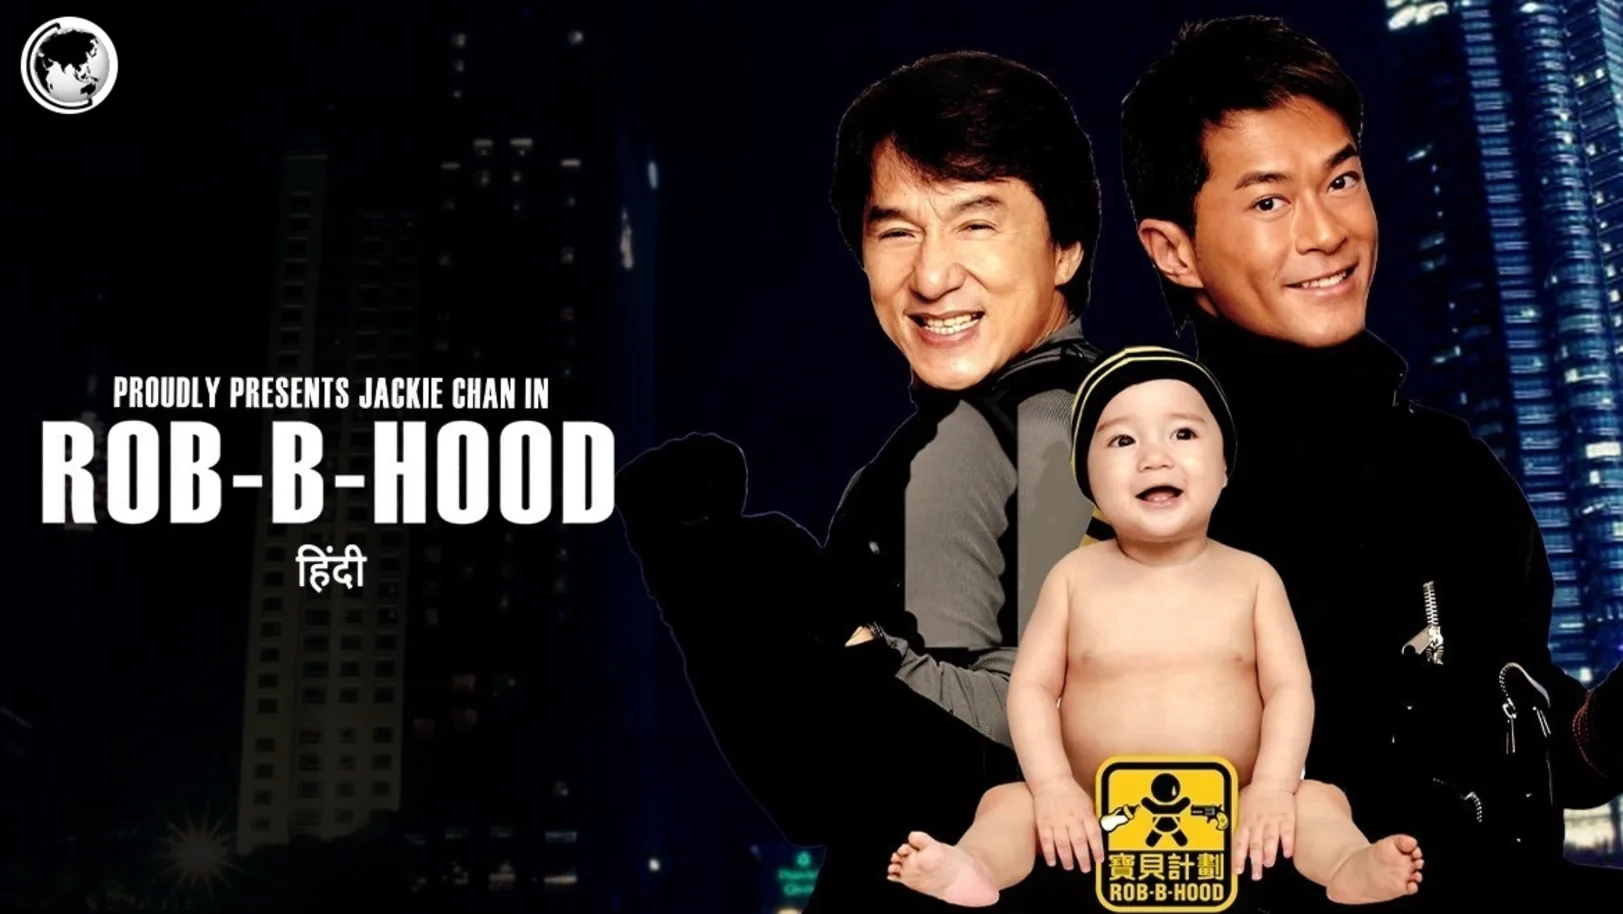 Rob-B-Hood Movie